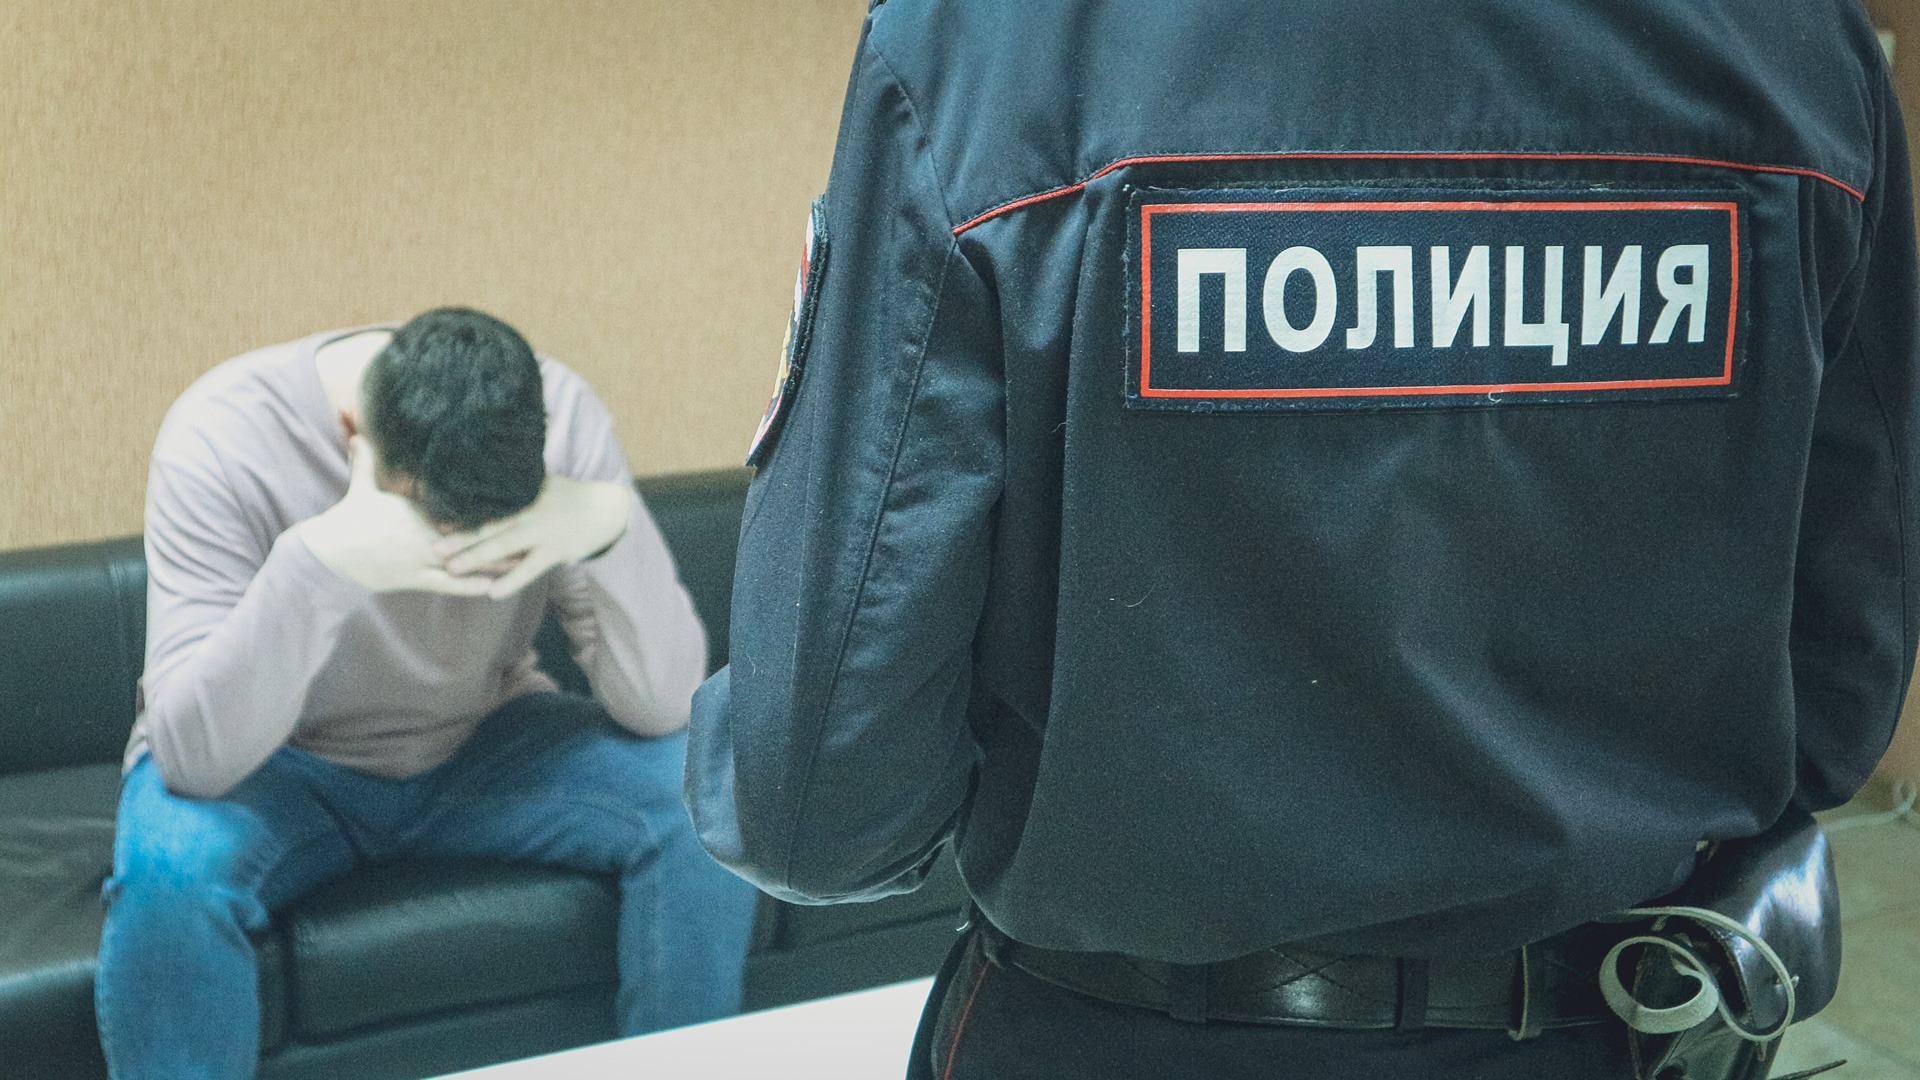 МВД: случаи потребительского обмана участились в Нижнем Новгороде